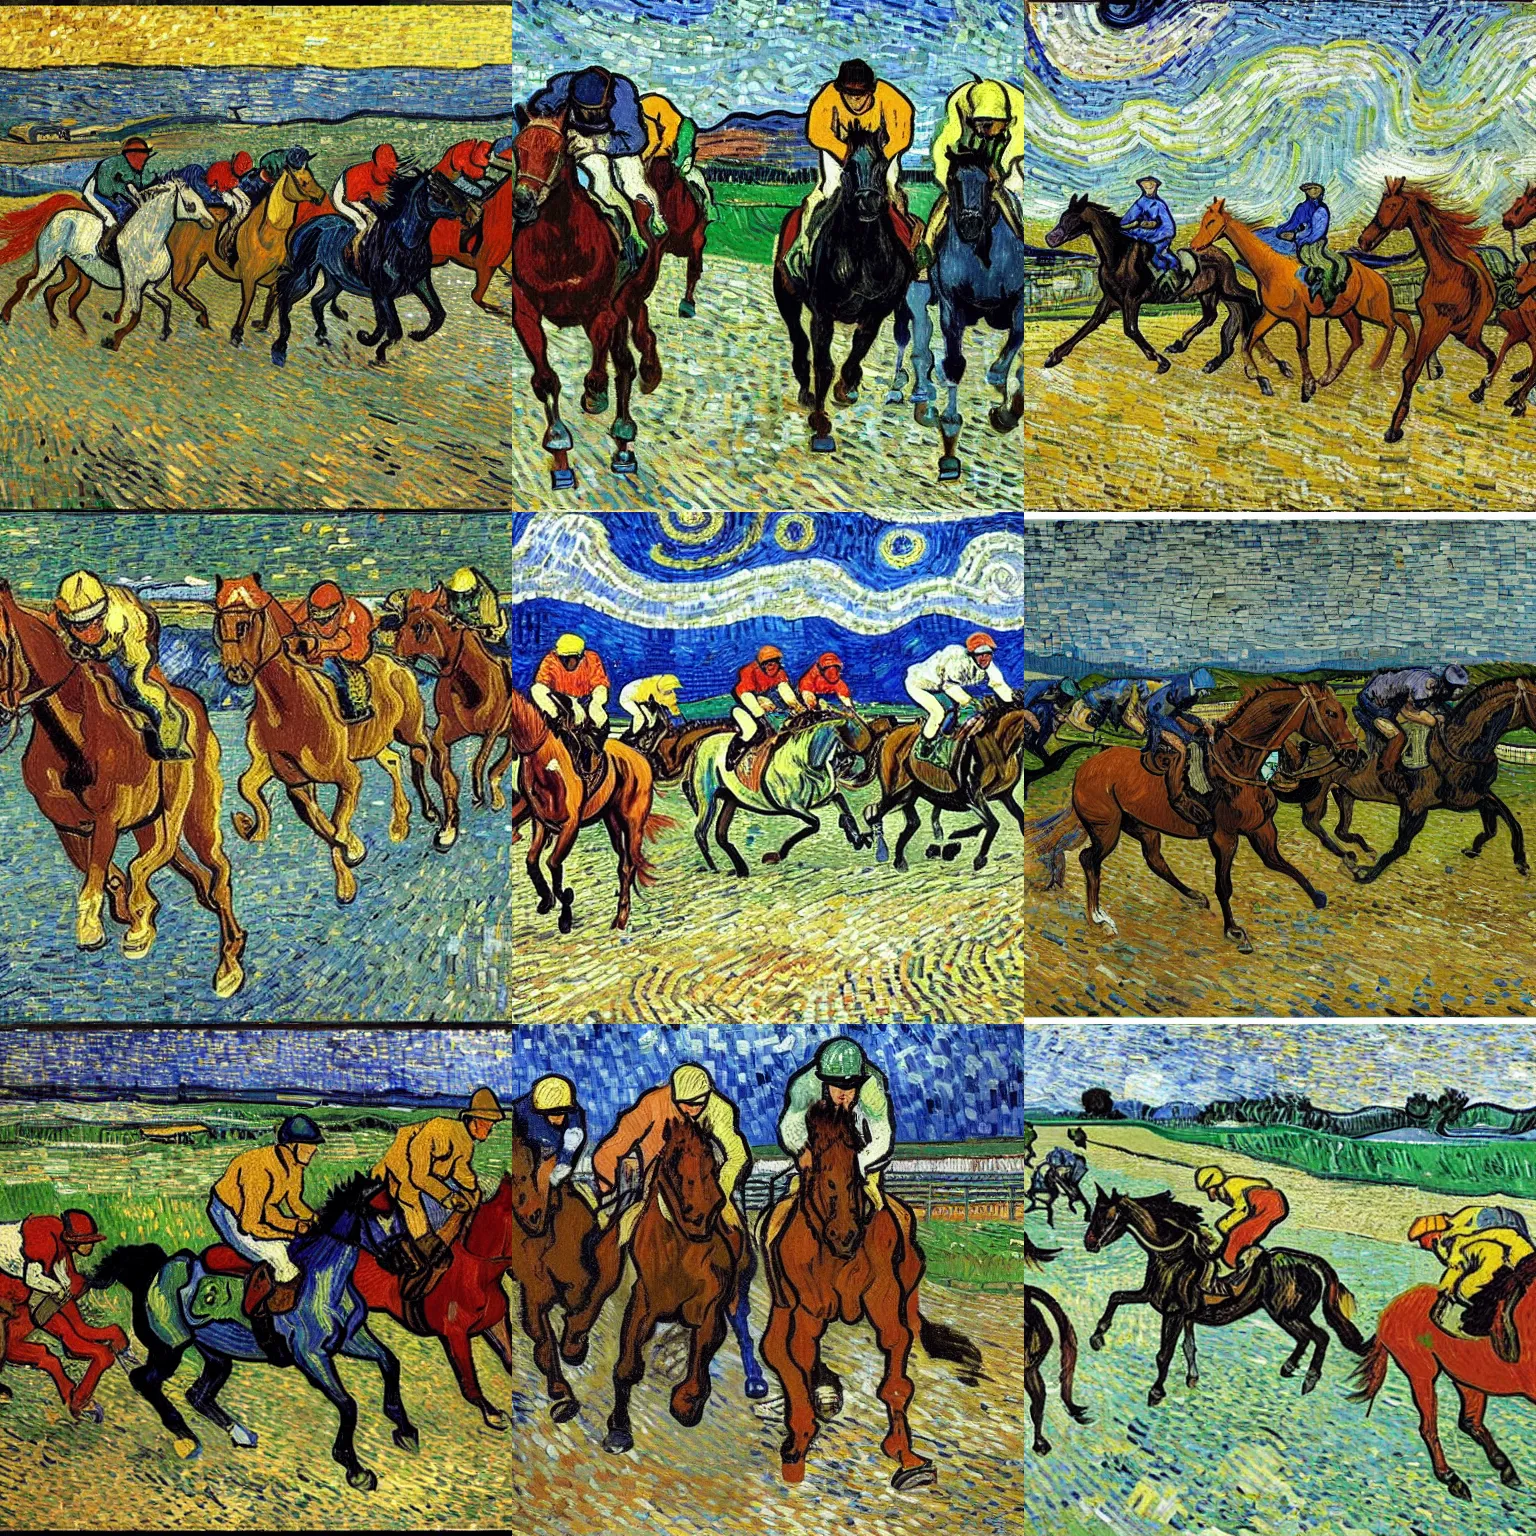 Prompt: horses racing by vincent van gogh, mosaic